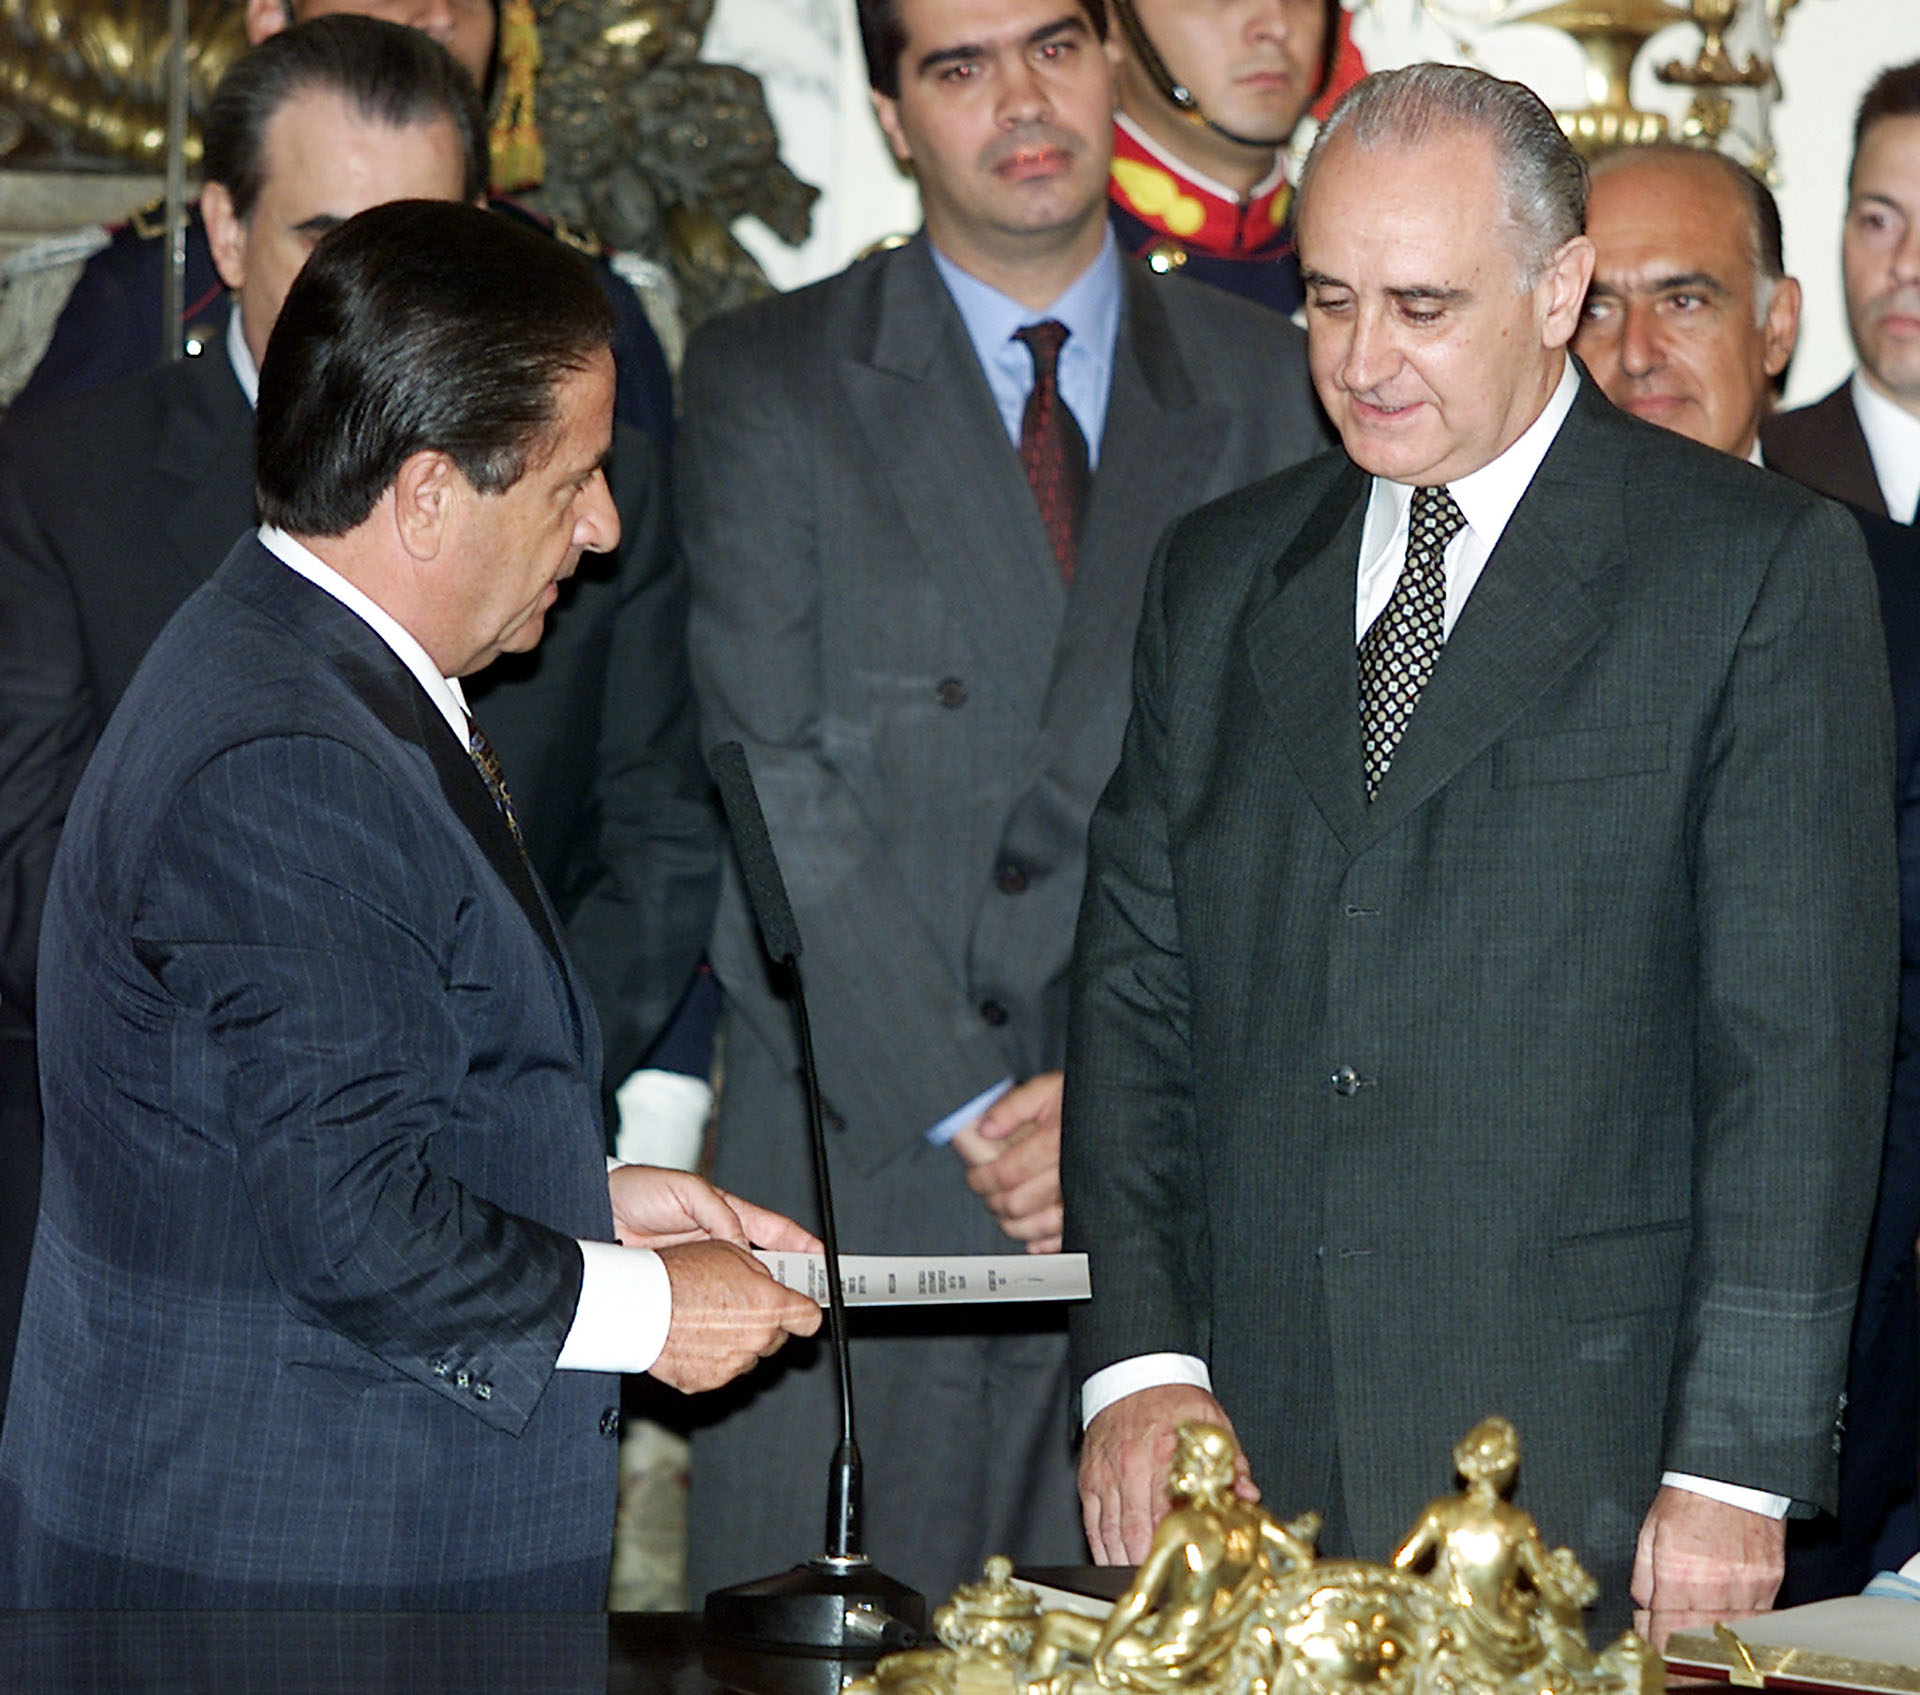 Eduardo Duhalde le toma juramento a Jorge Remes Lenicov como ministro de Economía en 2002 (Reuters)
